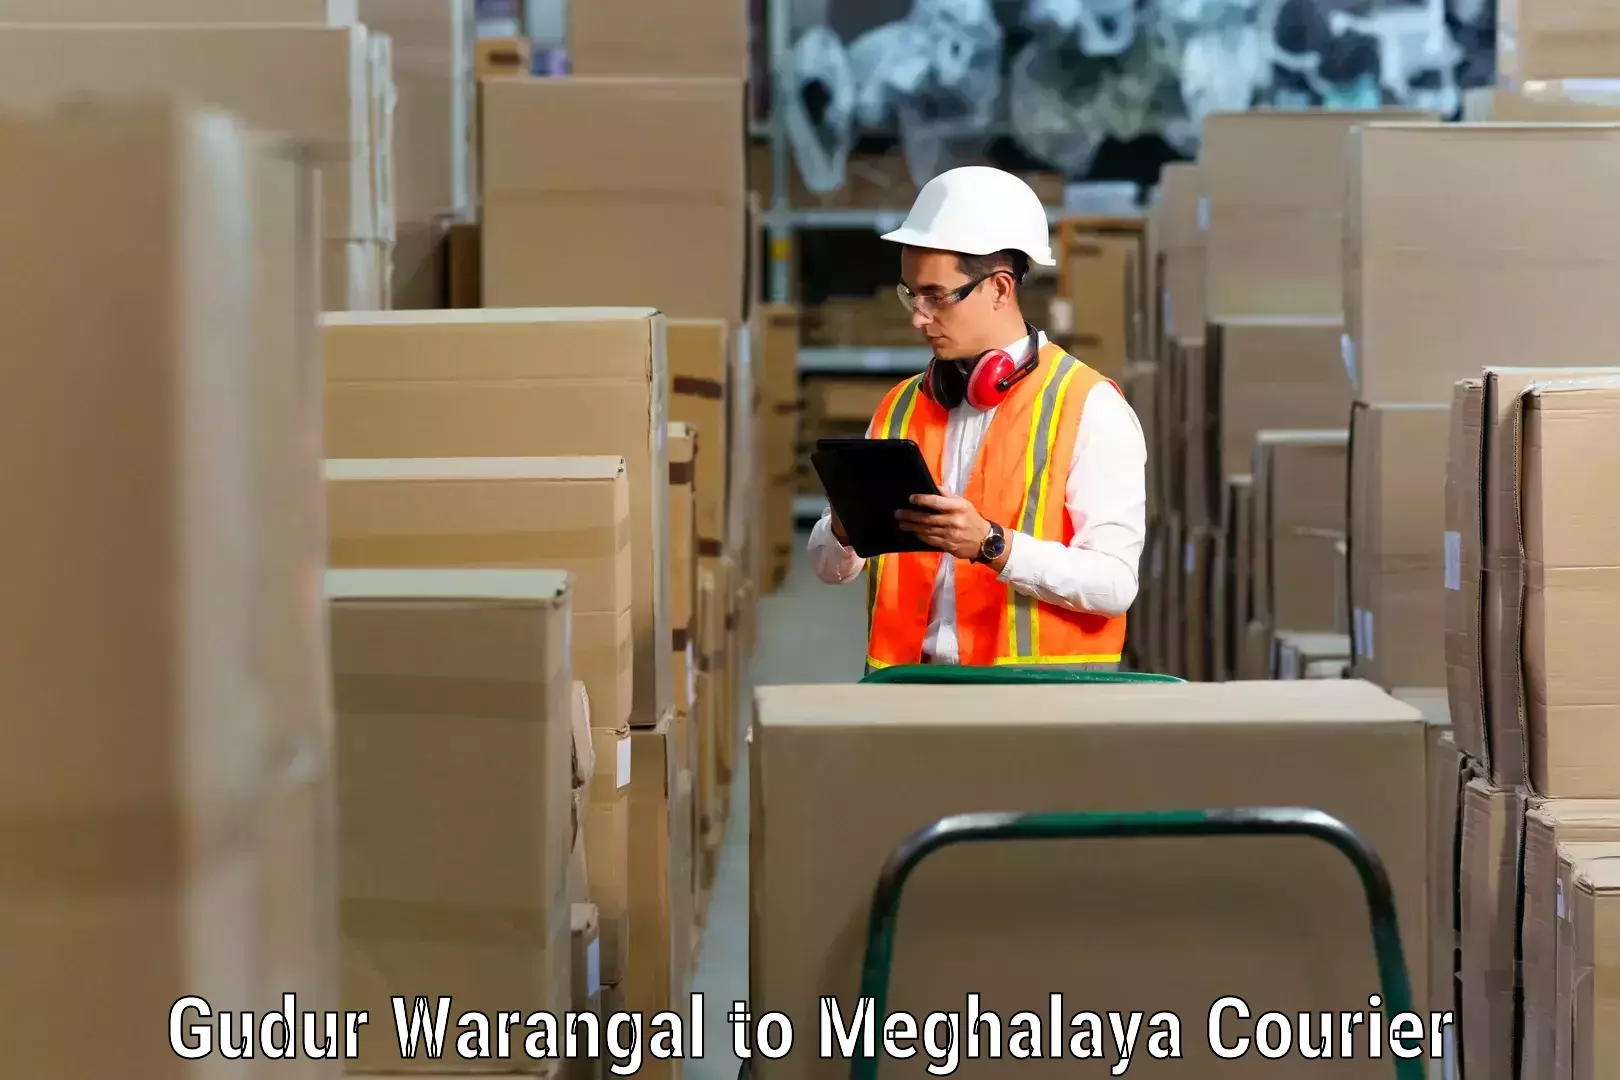 Furniture delivery service Gudur Warangal to NIT Meghalaya